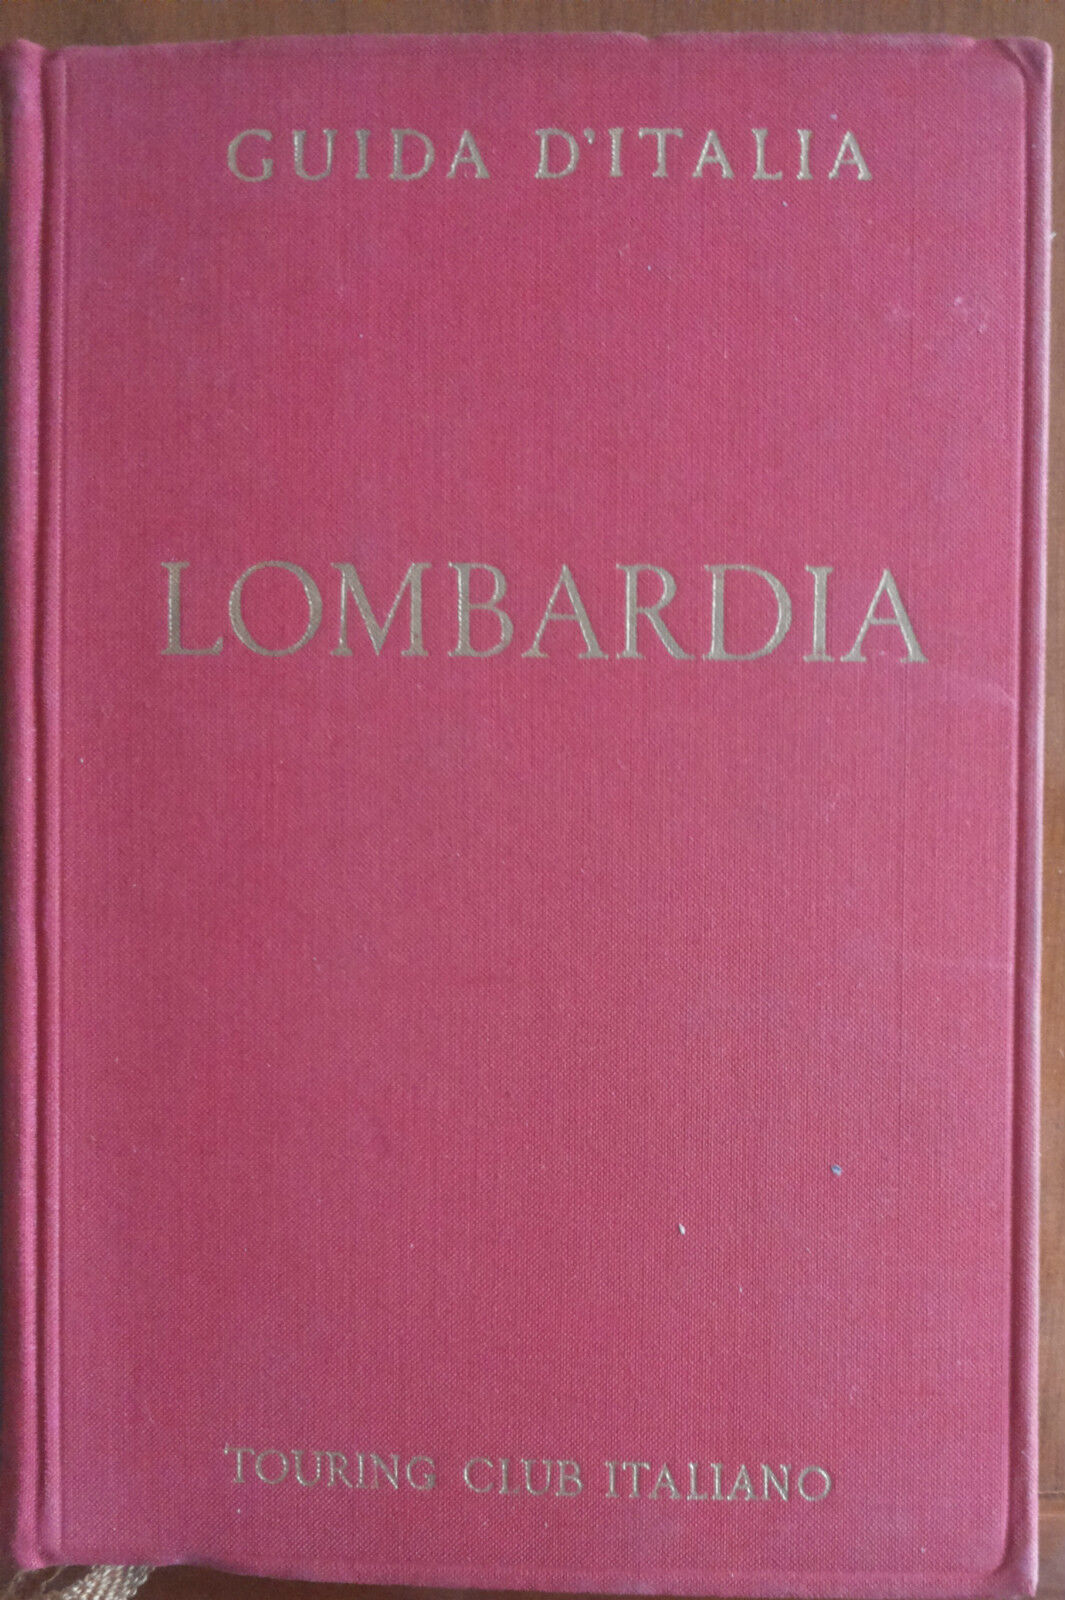 Lombardia - Guida d'Italia - Touring club italiano,1954 - A